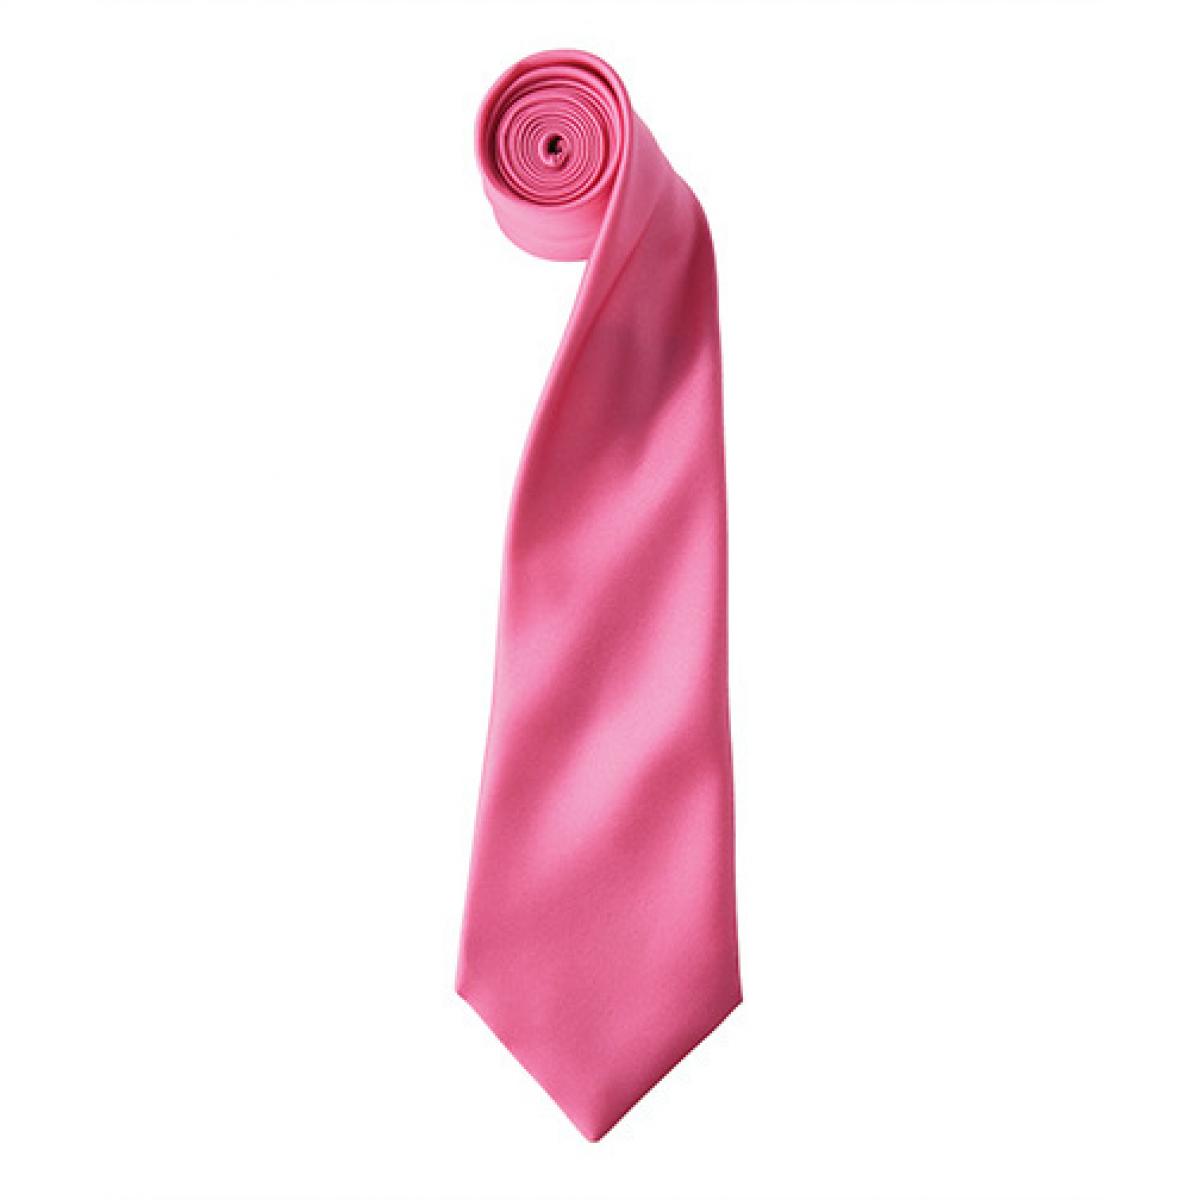 Hersteller: Premier Workwear Herstellernummer: PR750 Artikelbezeichnung: Satin Tie ´Colours´ / 144 x 8,5 cm Farbe: Fuchsia (ca. Pantone 219)